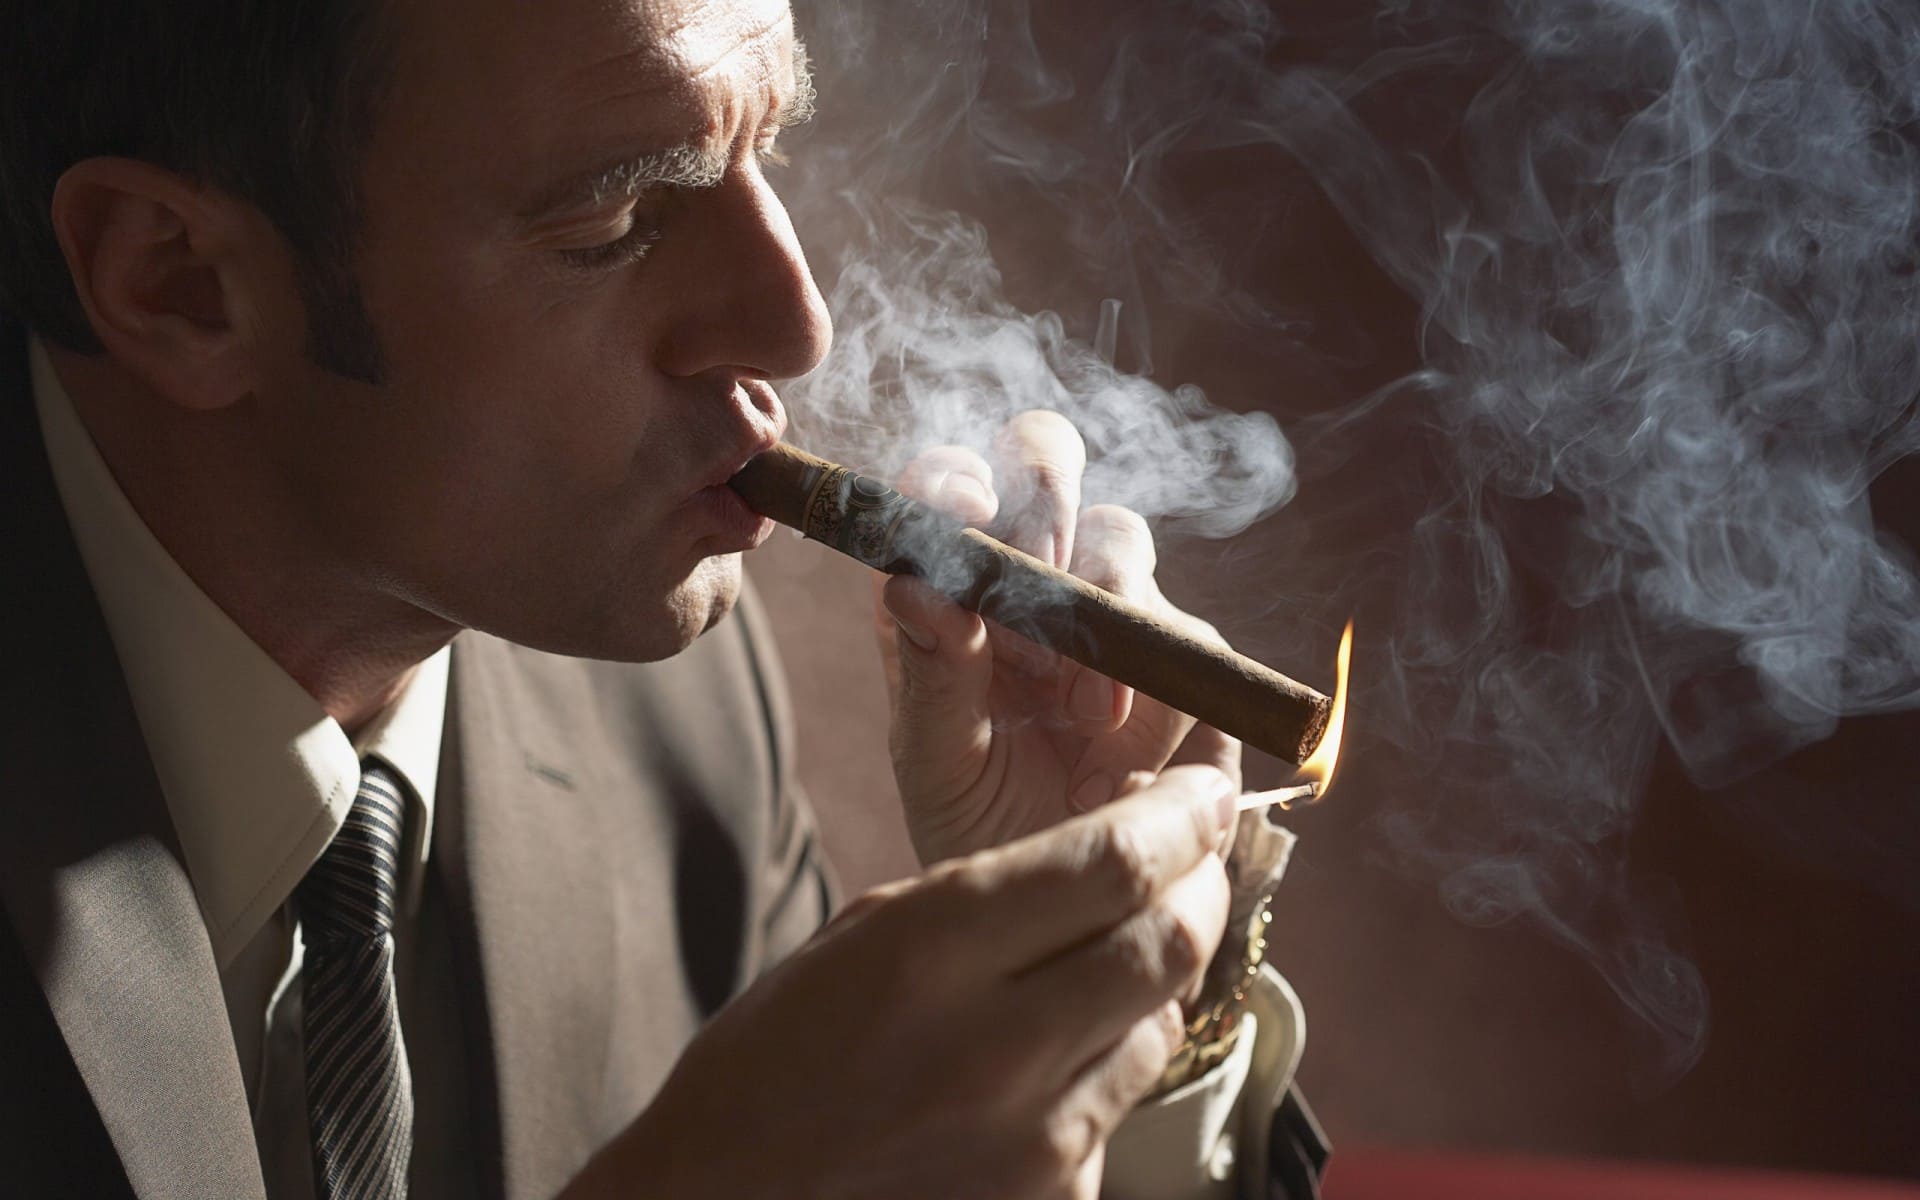 Kurenie sigary - Как правильно обрезать, прикурить и курить сигару?